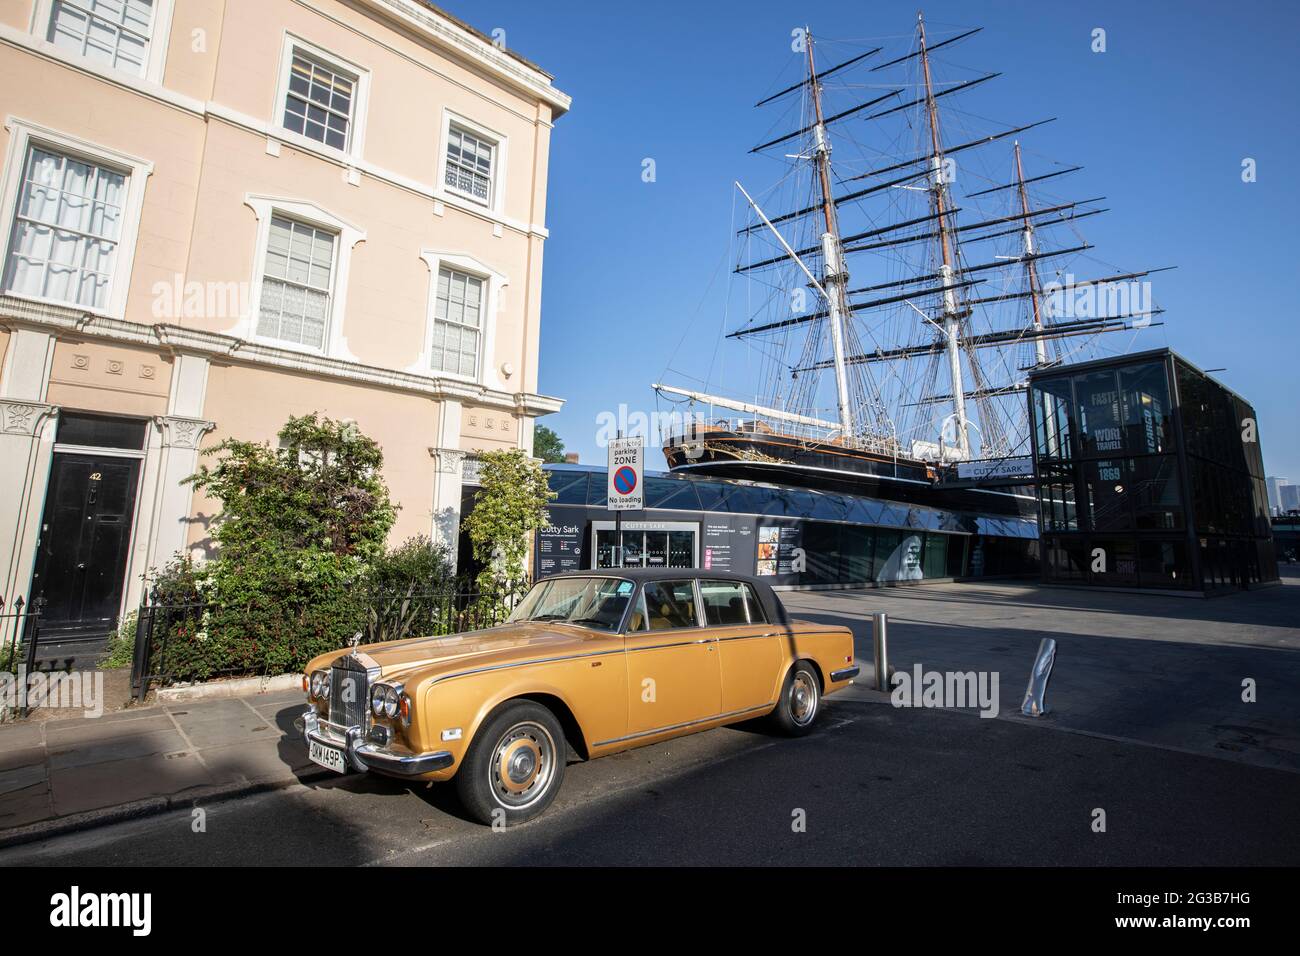 Une automobile Rolls Royce se trouve à l'extérieur d'une maison en terrasse sur King William Walk avec le Cutty Sark en arrière-plan, Greenwich, sud-est de Londres, Angleterre Banque D'Images